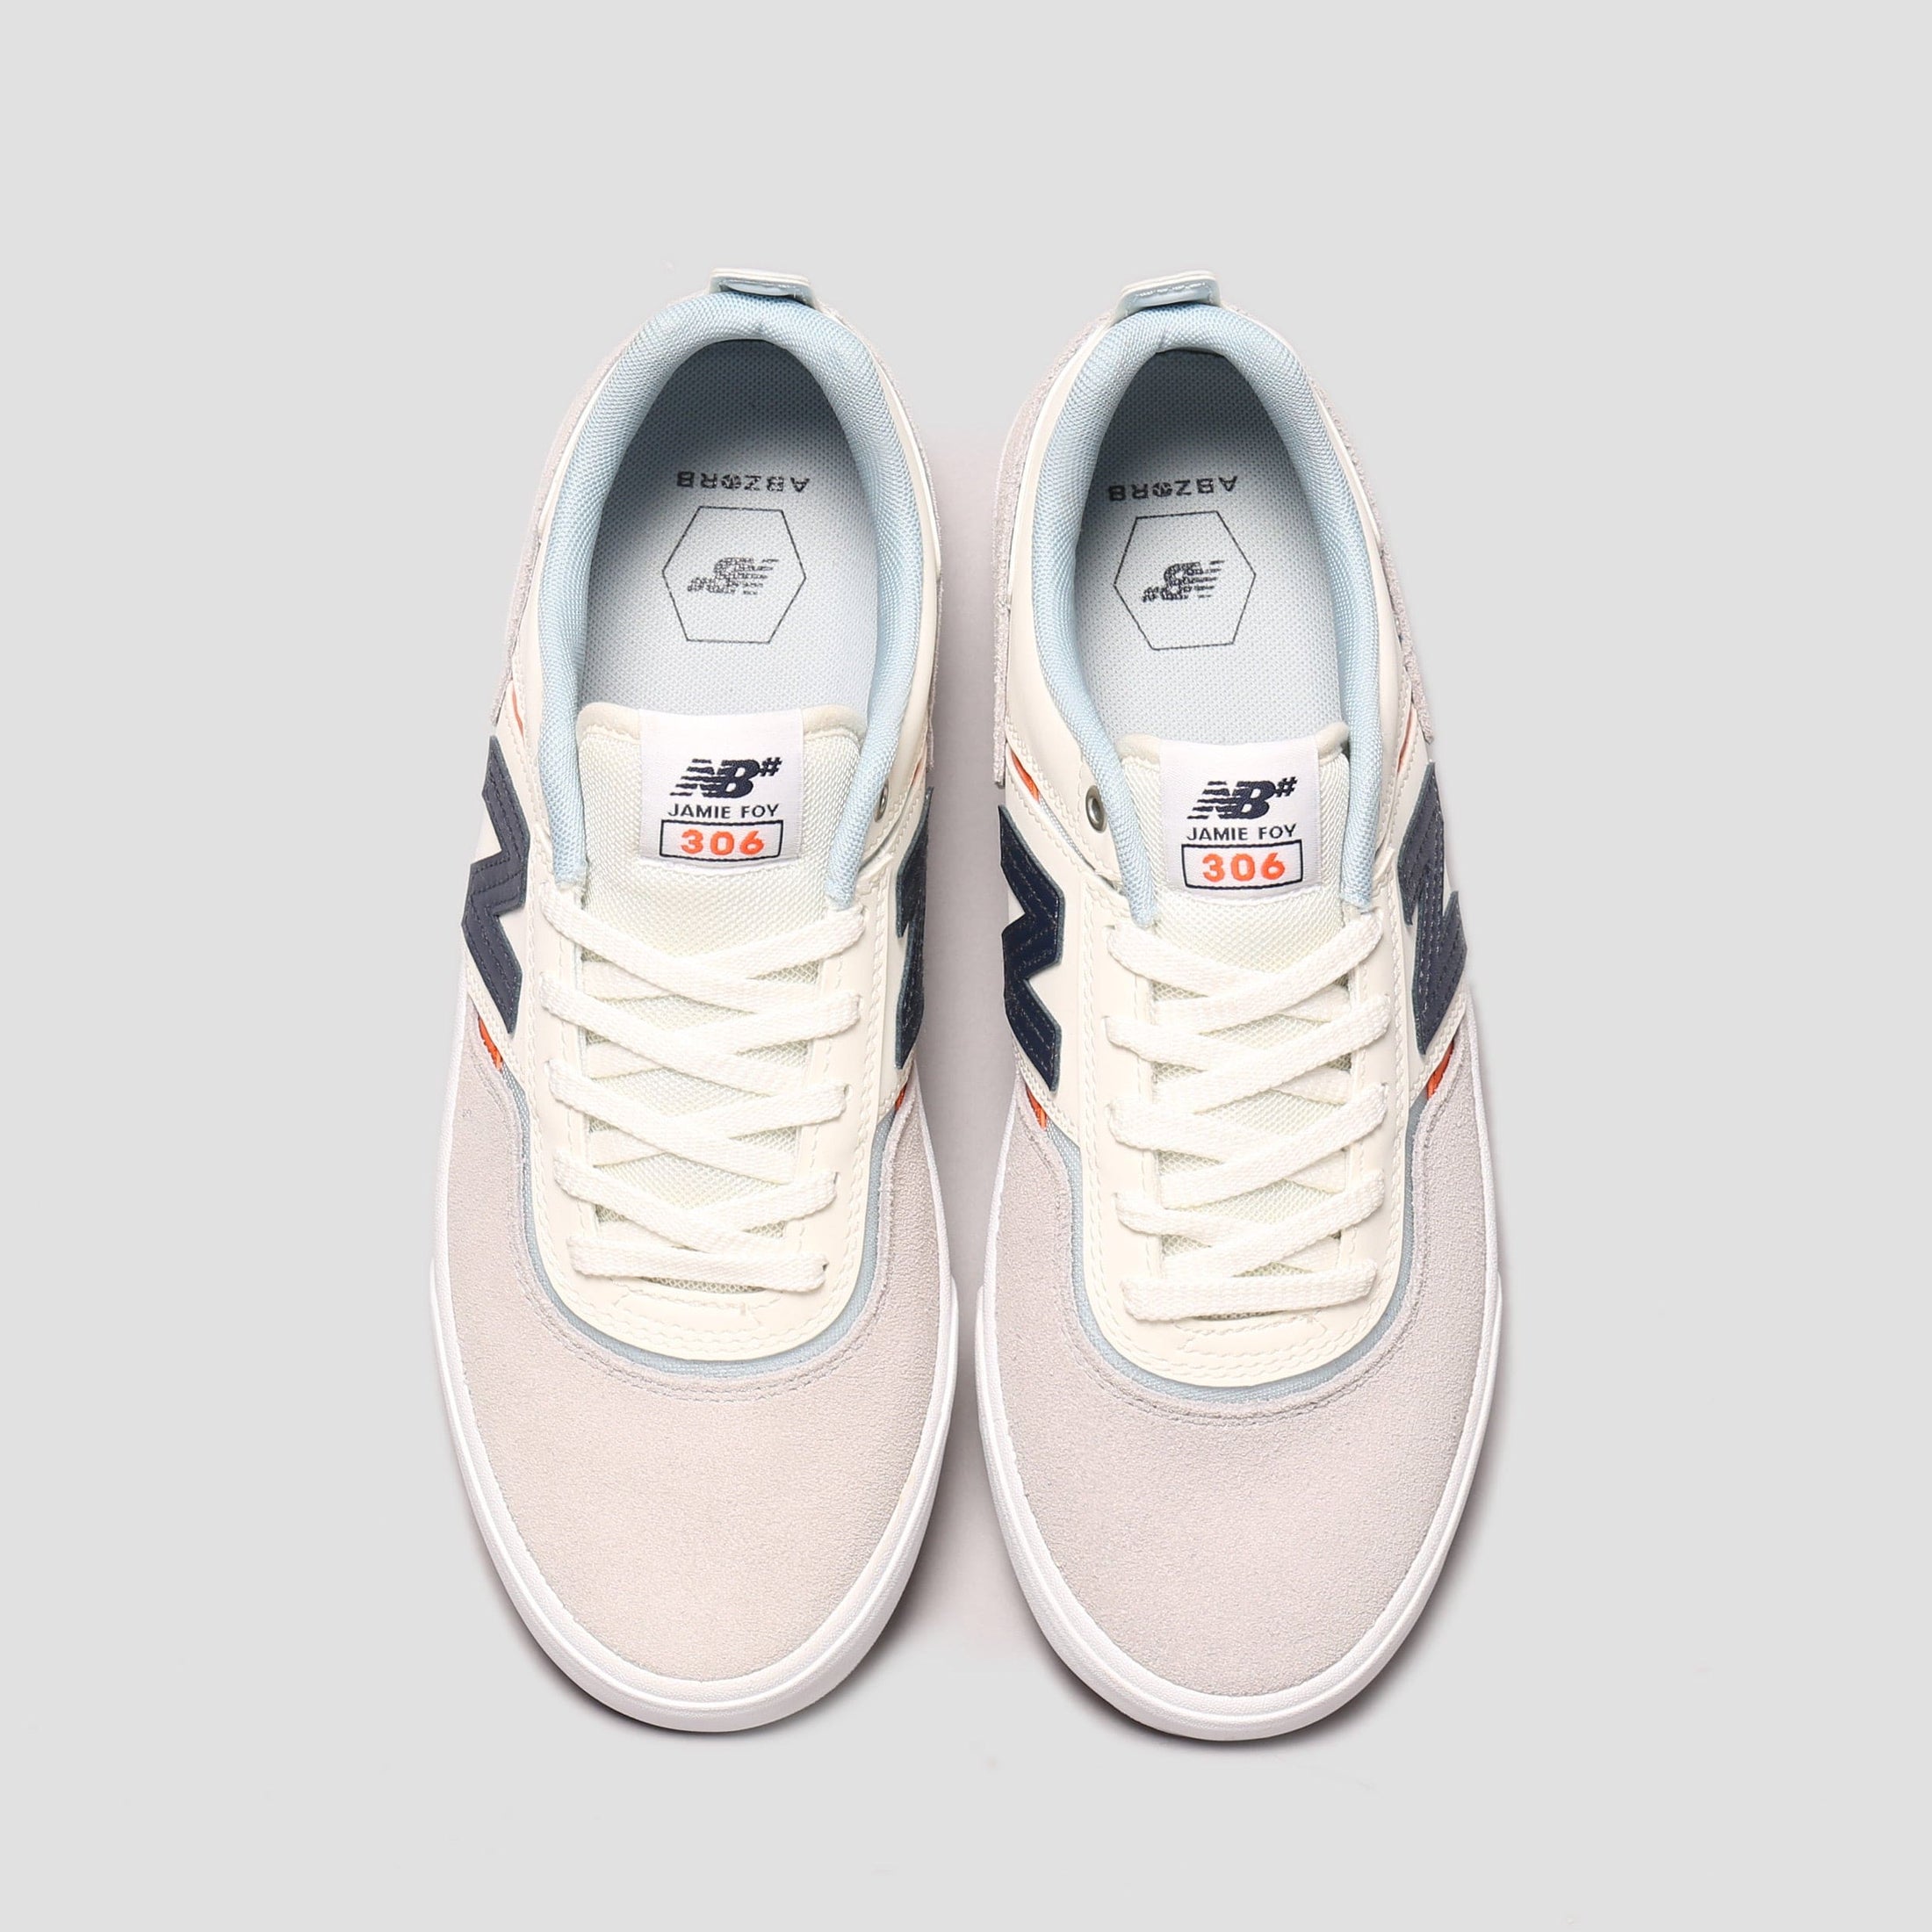 New Balance Jamie Foy 306 Shoes Grey / White